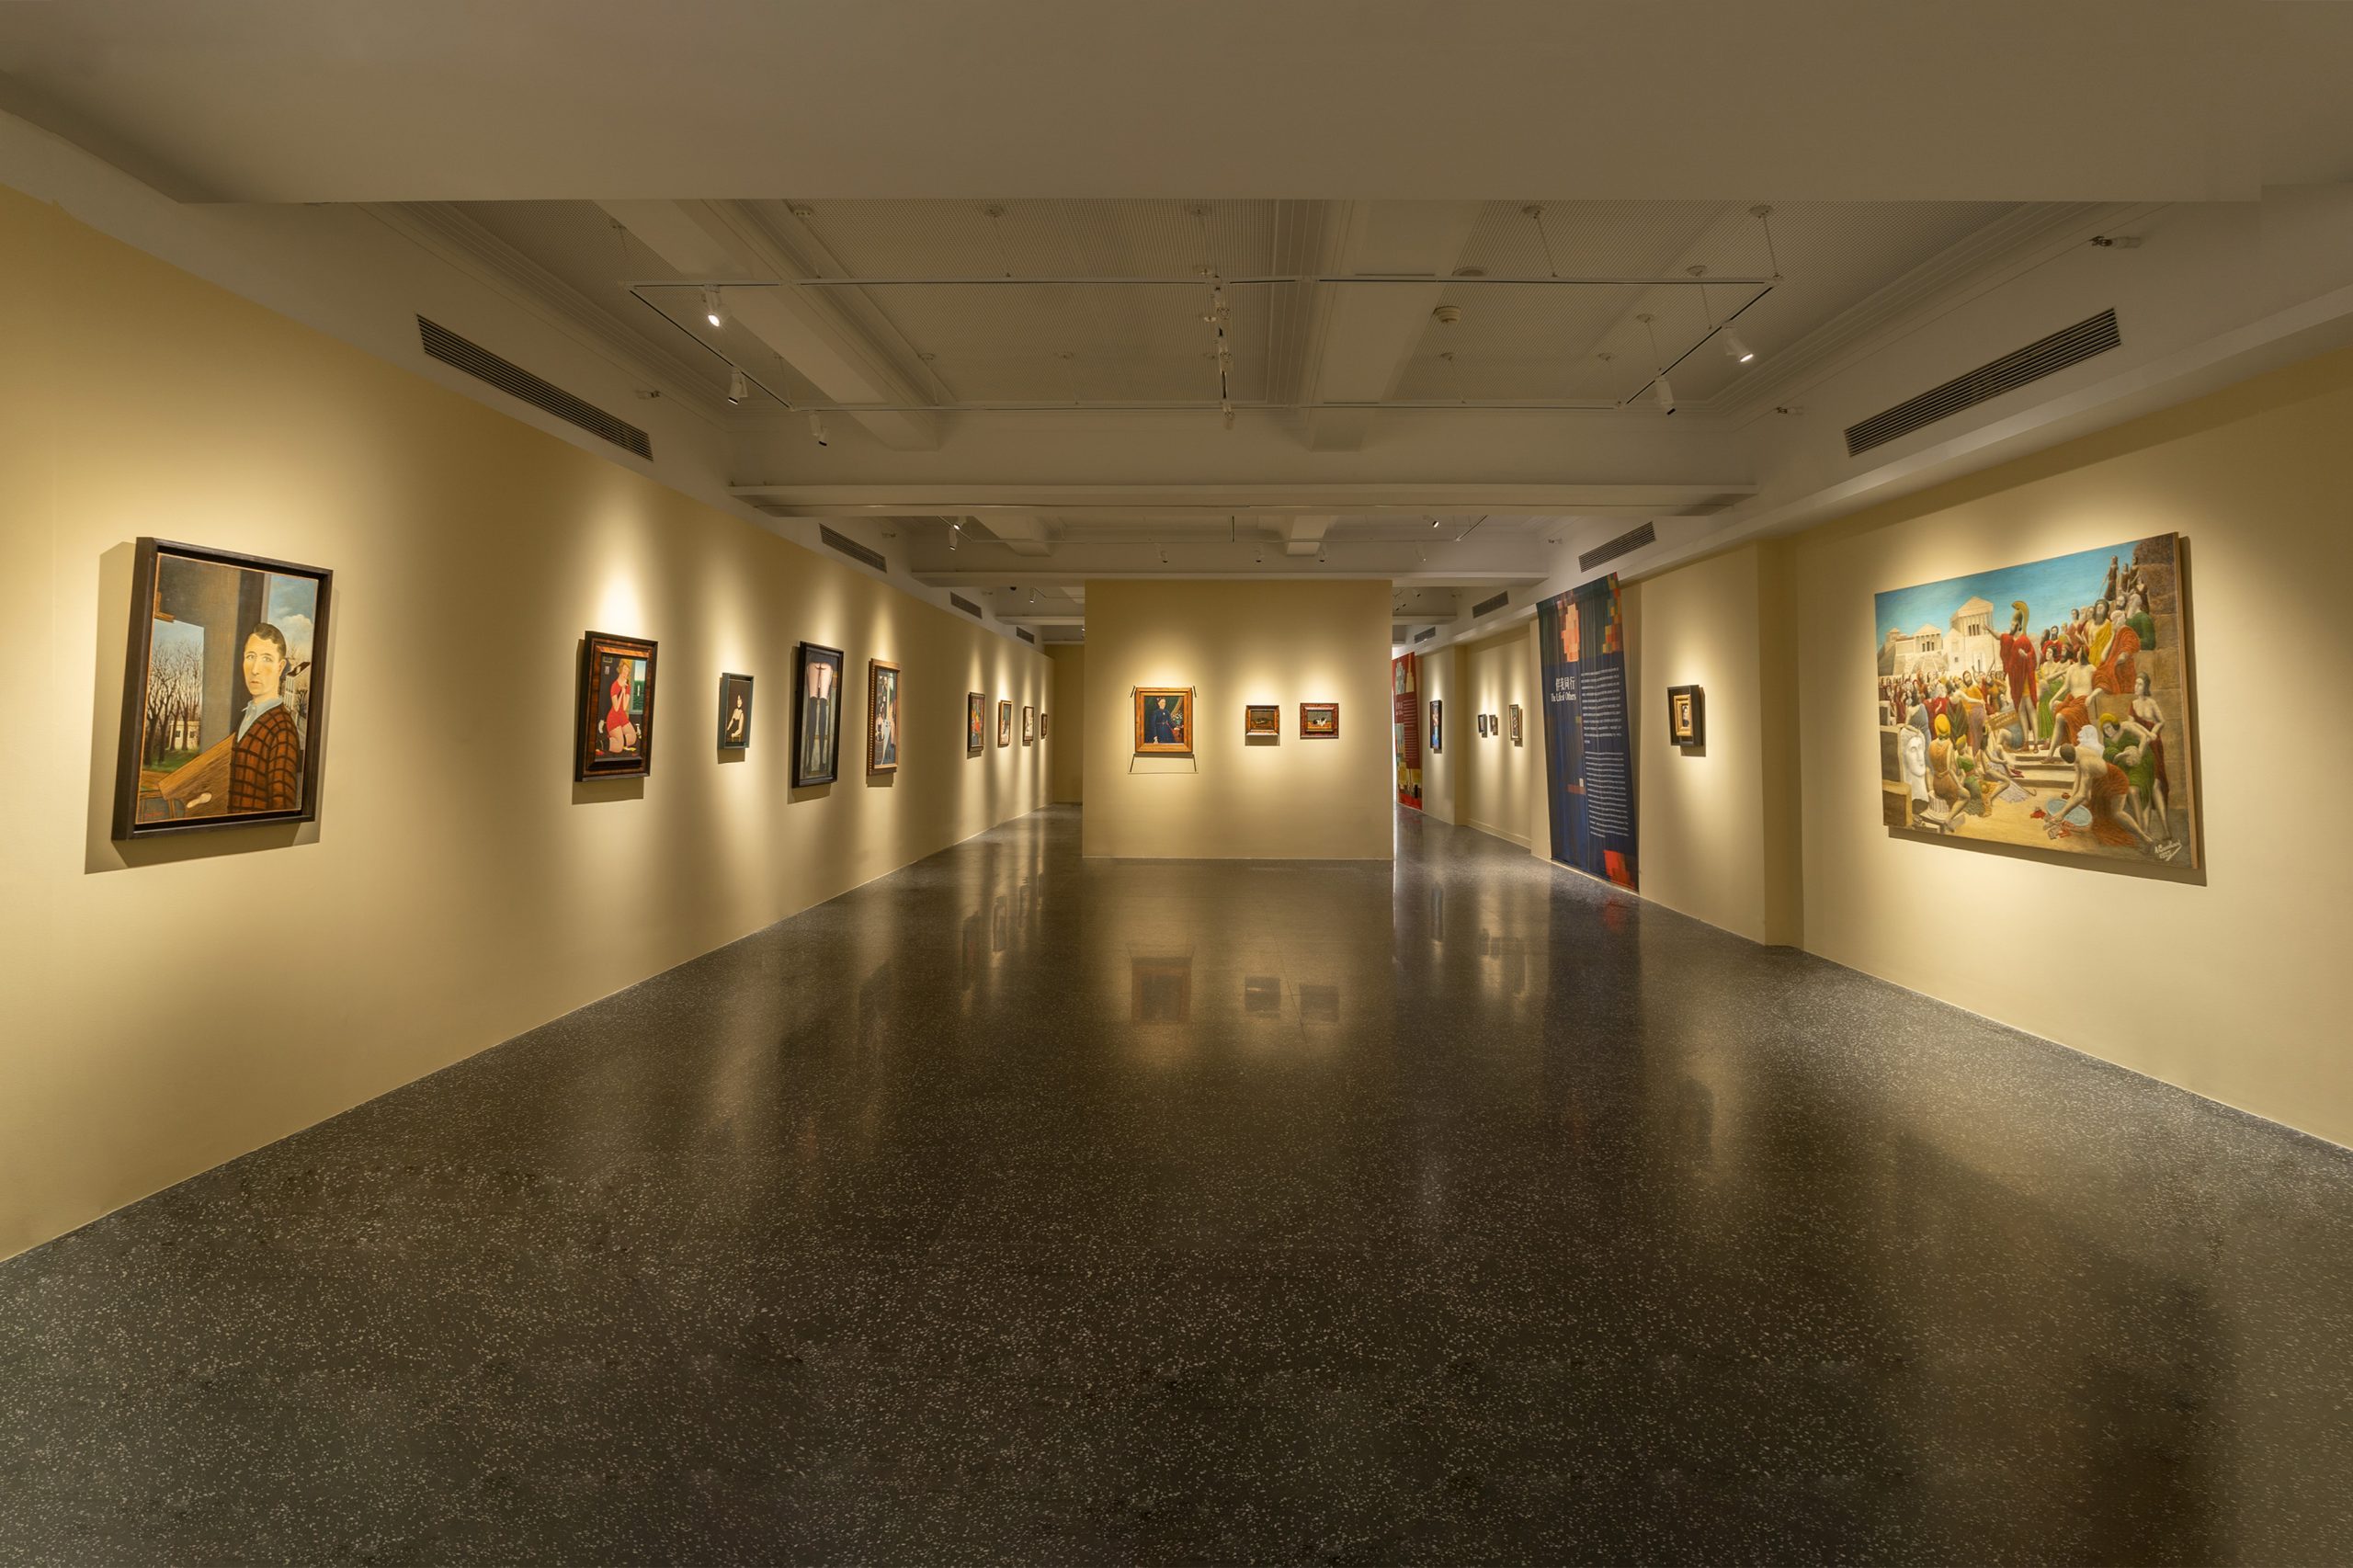 Vue de l'exposition, salle avec les portraits